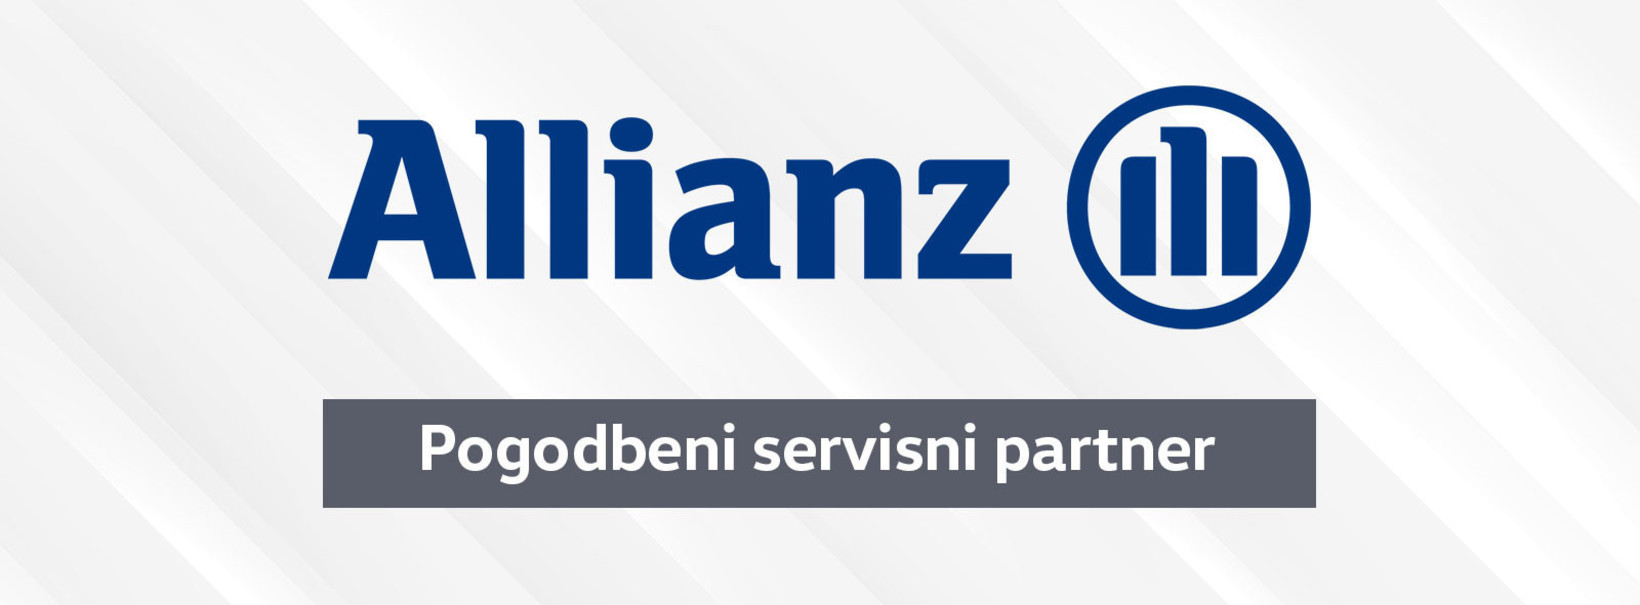 Allianz prijava škode - pogodbeni servisni partner